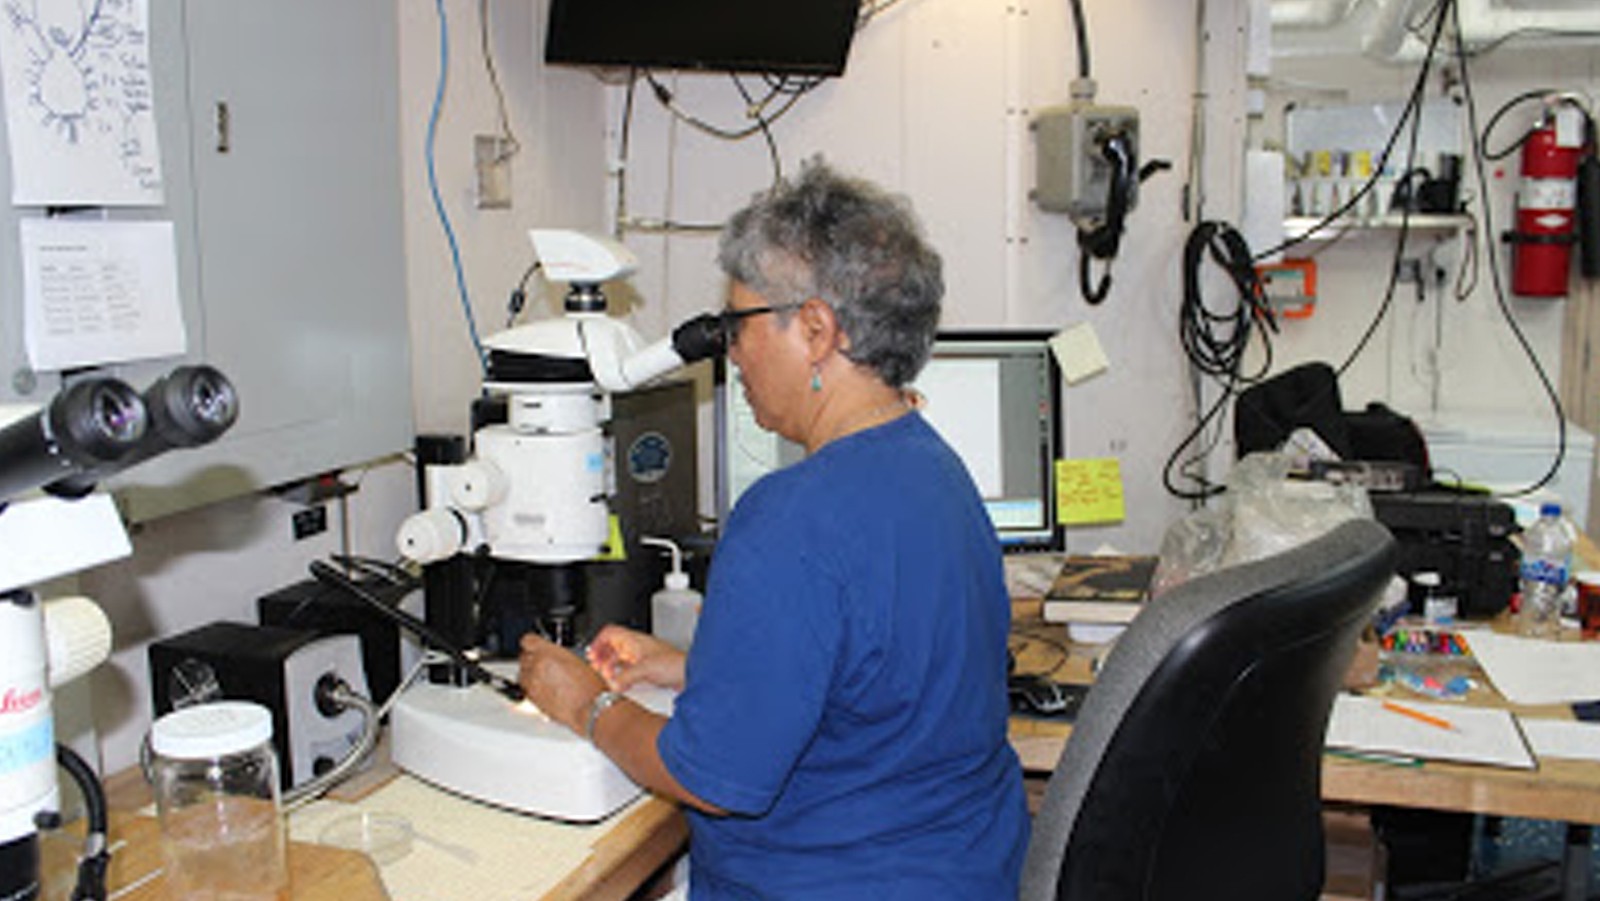 Los científicos que trabajan a bordo de la nave de investigación Nancy Foster. Crédito de la imagen: NOAA